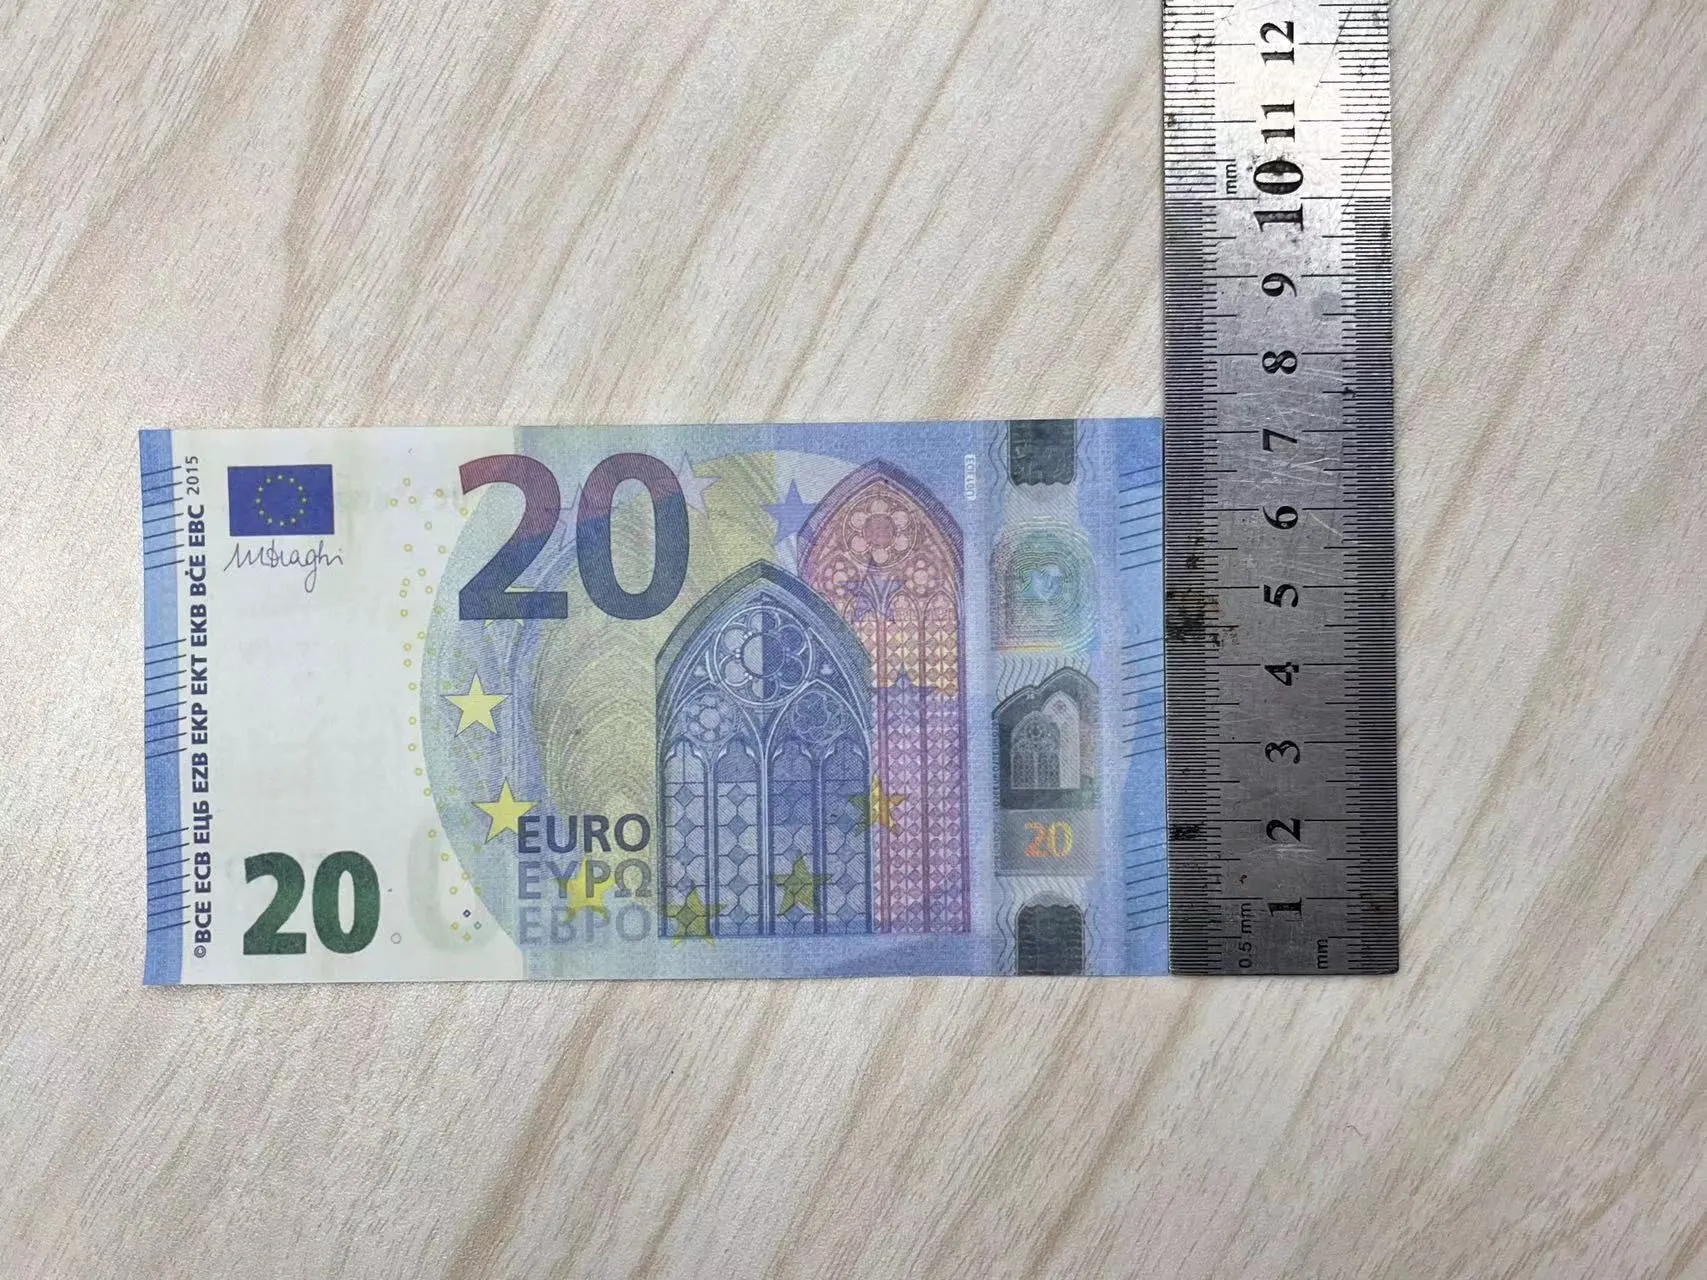 Copiar dinheiro real 1:2 tamanho falso boleto notas 10 20 50 100 200 dólar americano euros libra notas inglesas barra de brinquedo realista p jofdf